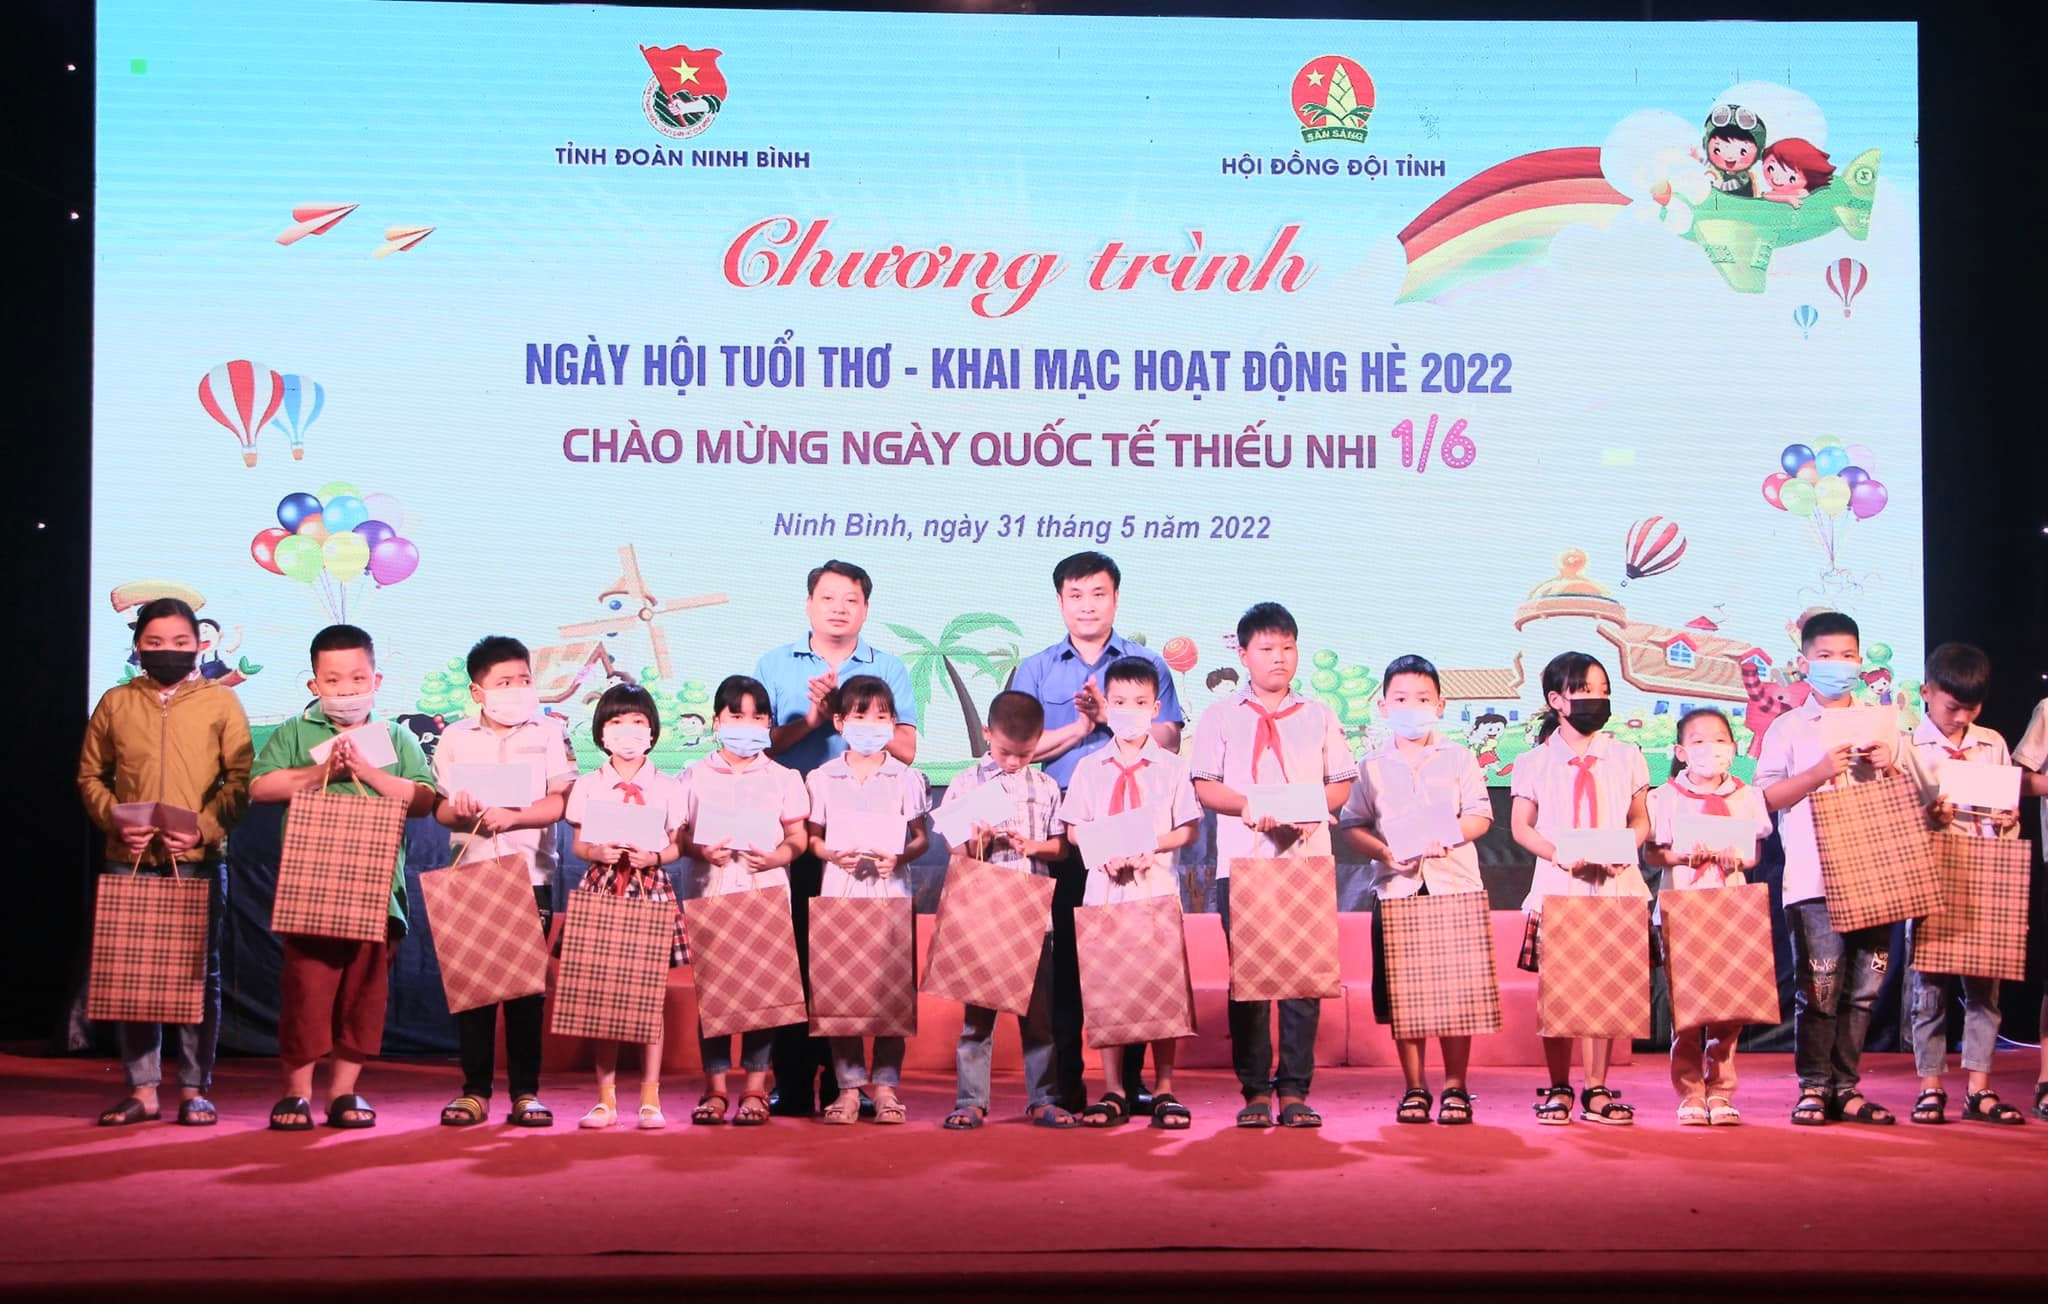 Tỉnh đoàn Ninh Bình tặng quà cho thiếu nhi có hoàn cảnh khó khăn tại Chương trình Ngày hội tuổi thơ, khai mạc hoạt động hè 2022